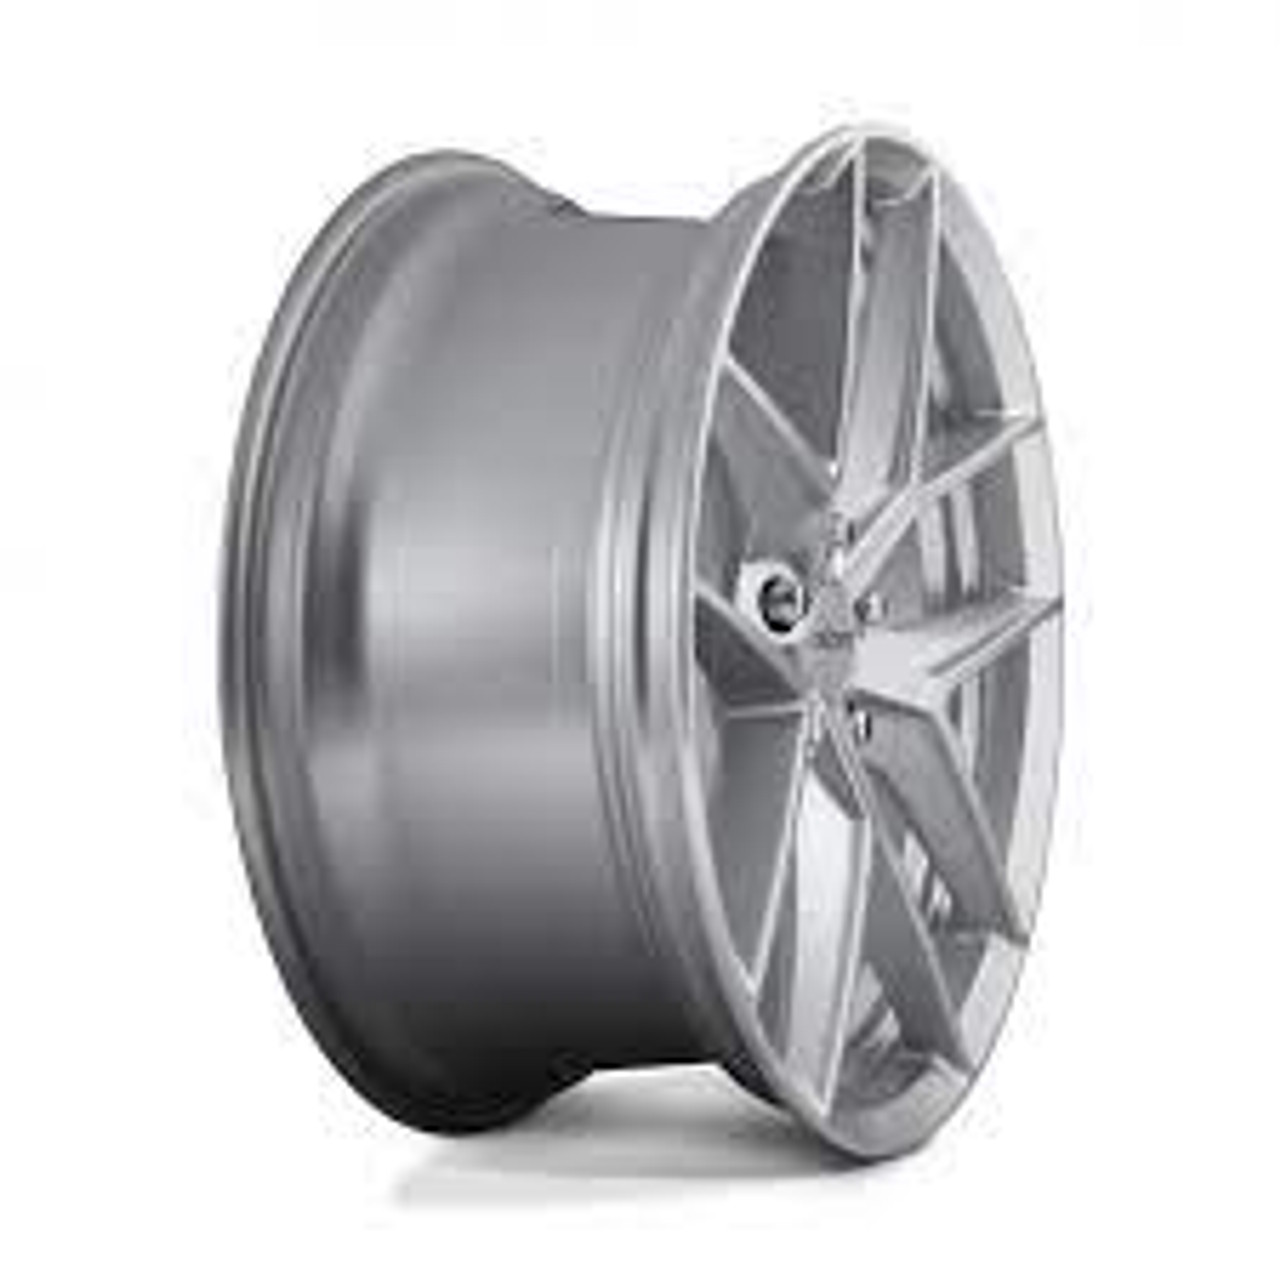 Rotiform R133 FLG Wheel 18x8.5 5x108 45 Offset - Gloss Silver